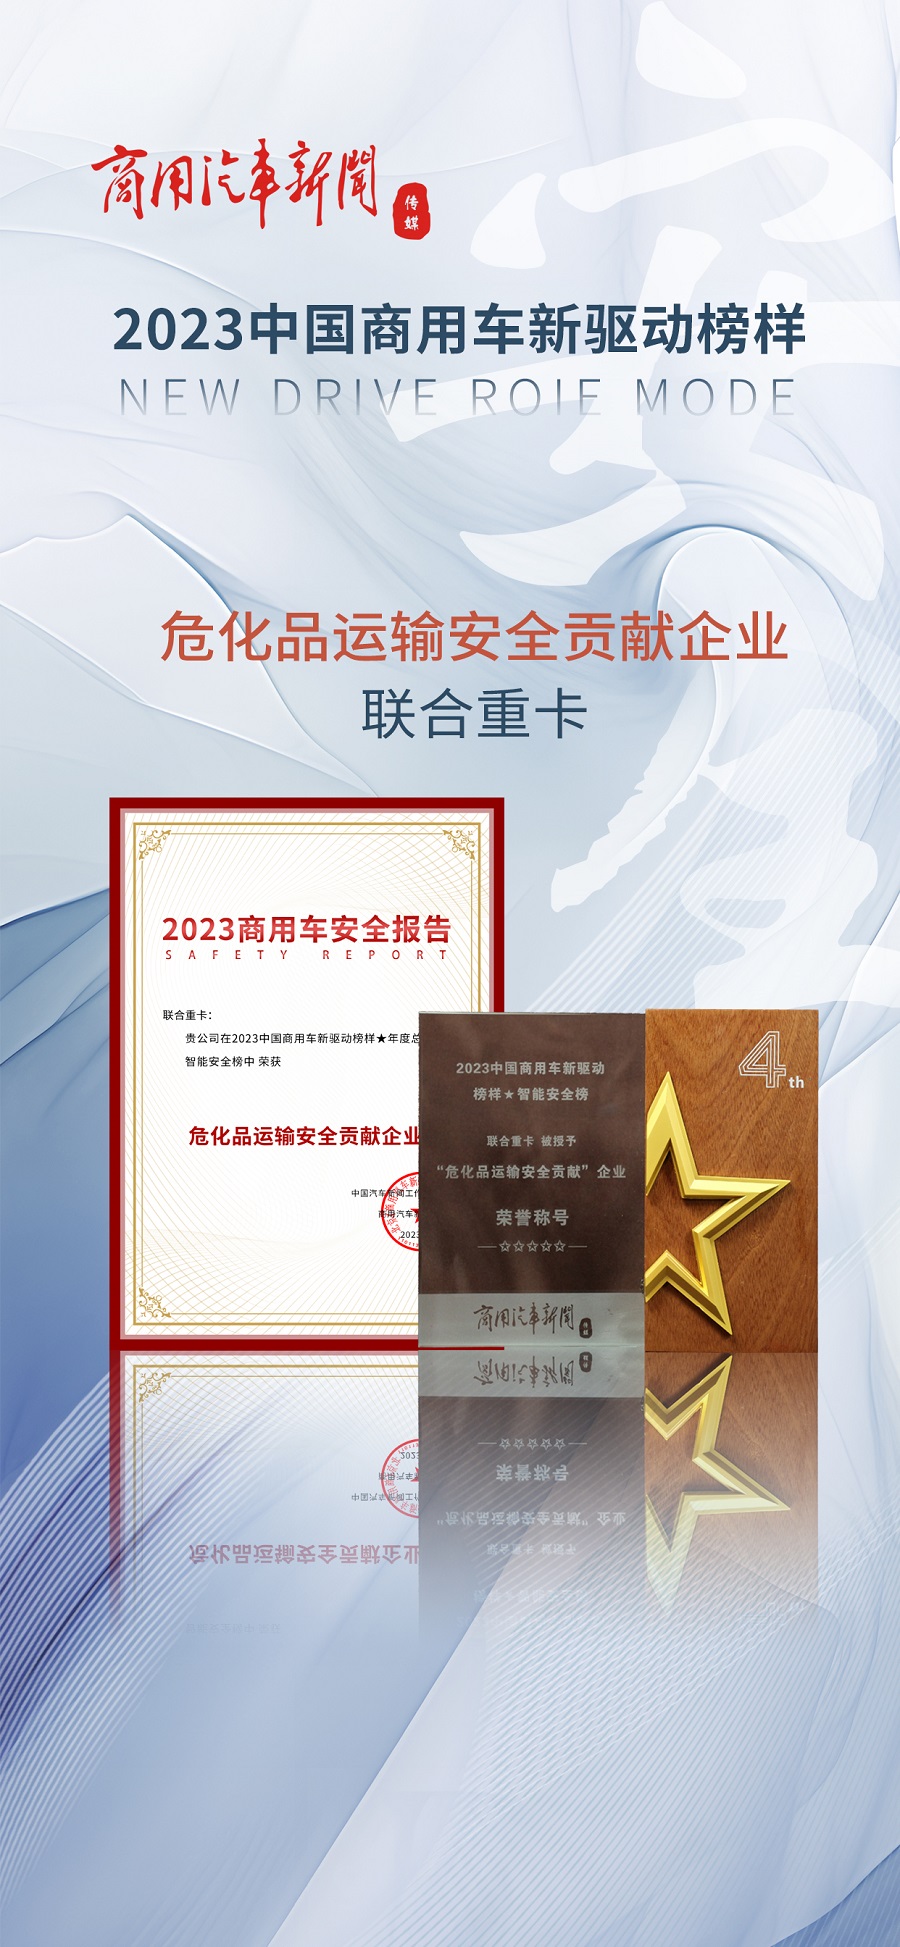 安全技术结硕果 服务力量暖人心 联合重卡荣膺中国商用车年度总评榜两项大奖